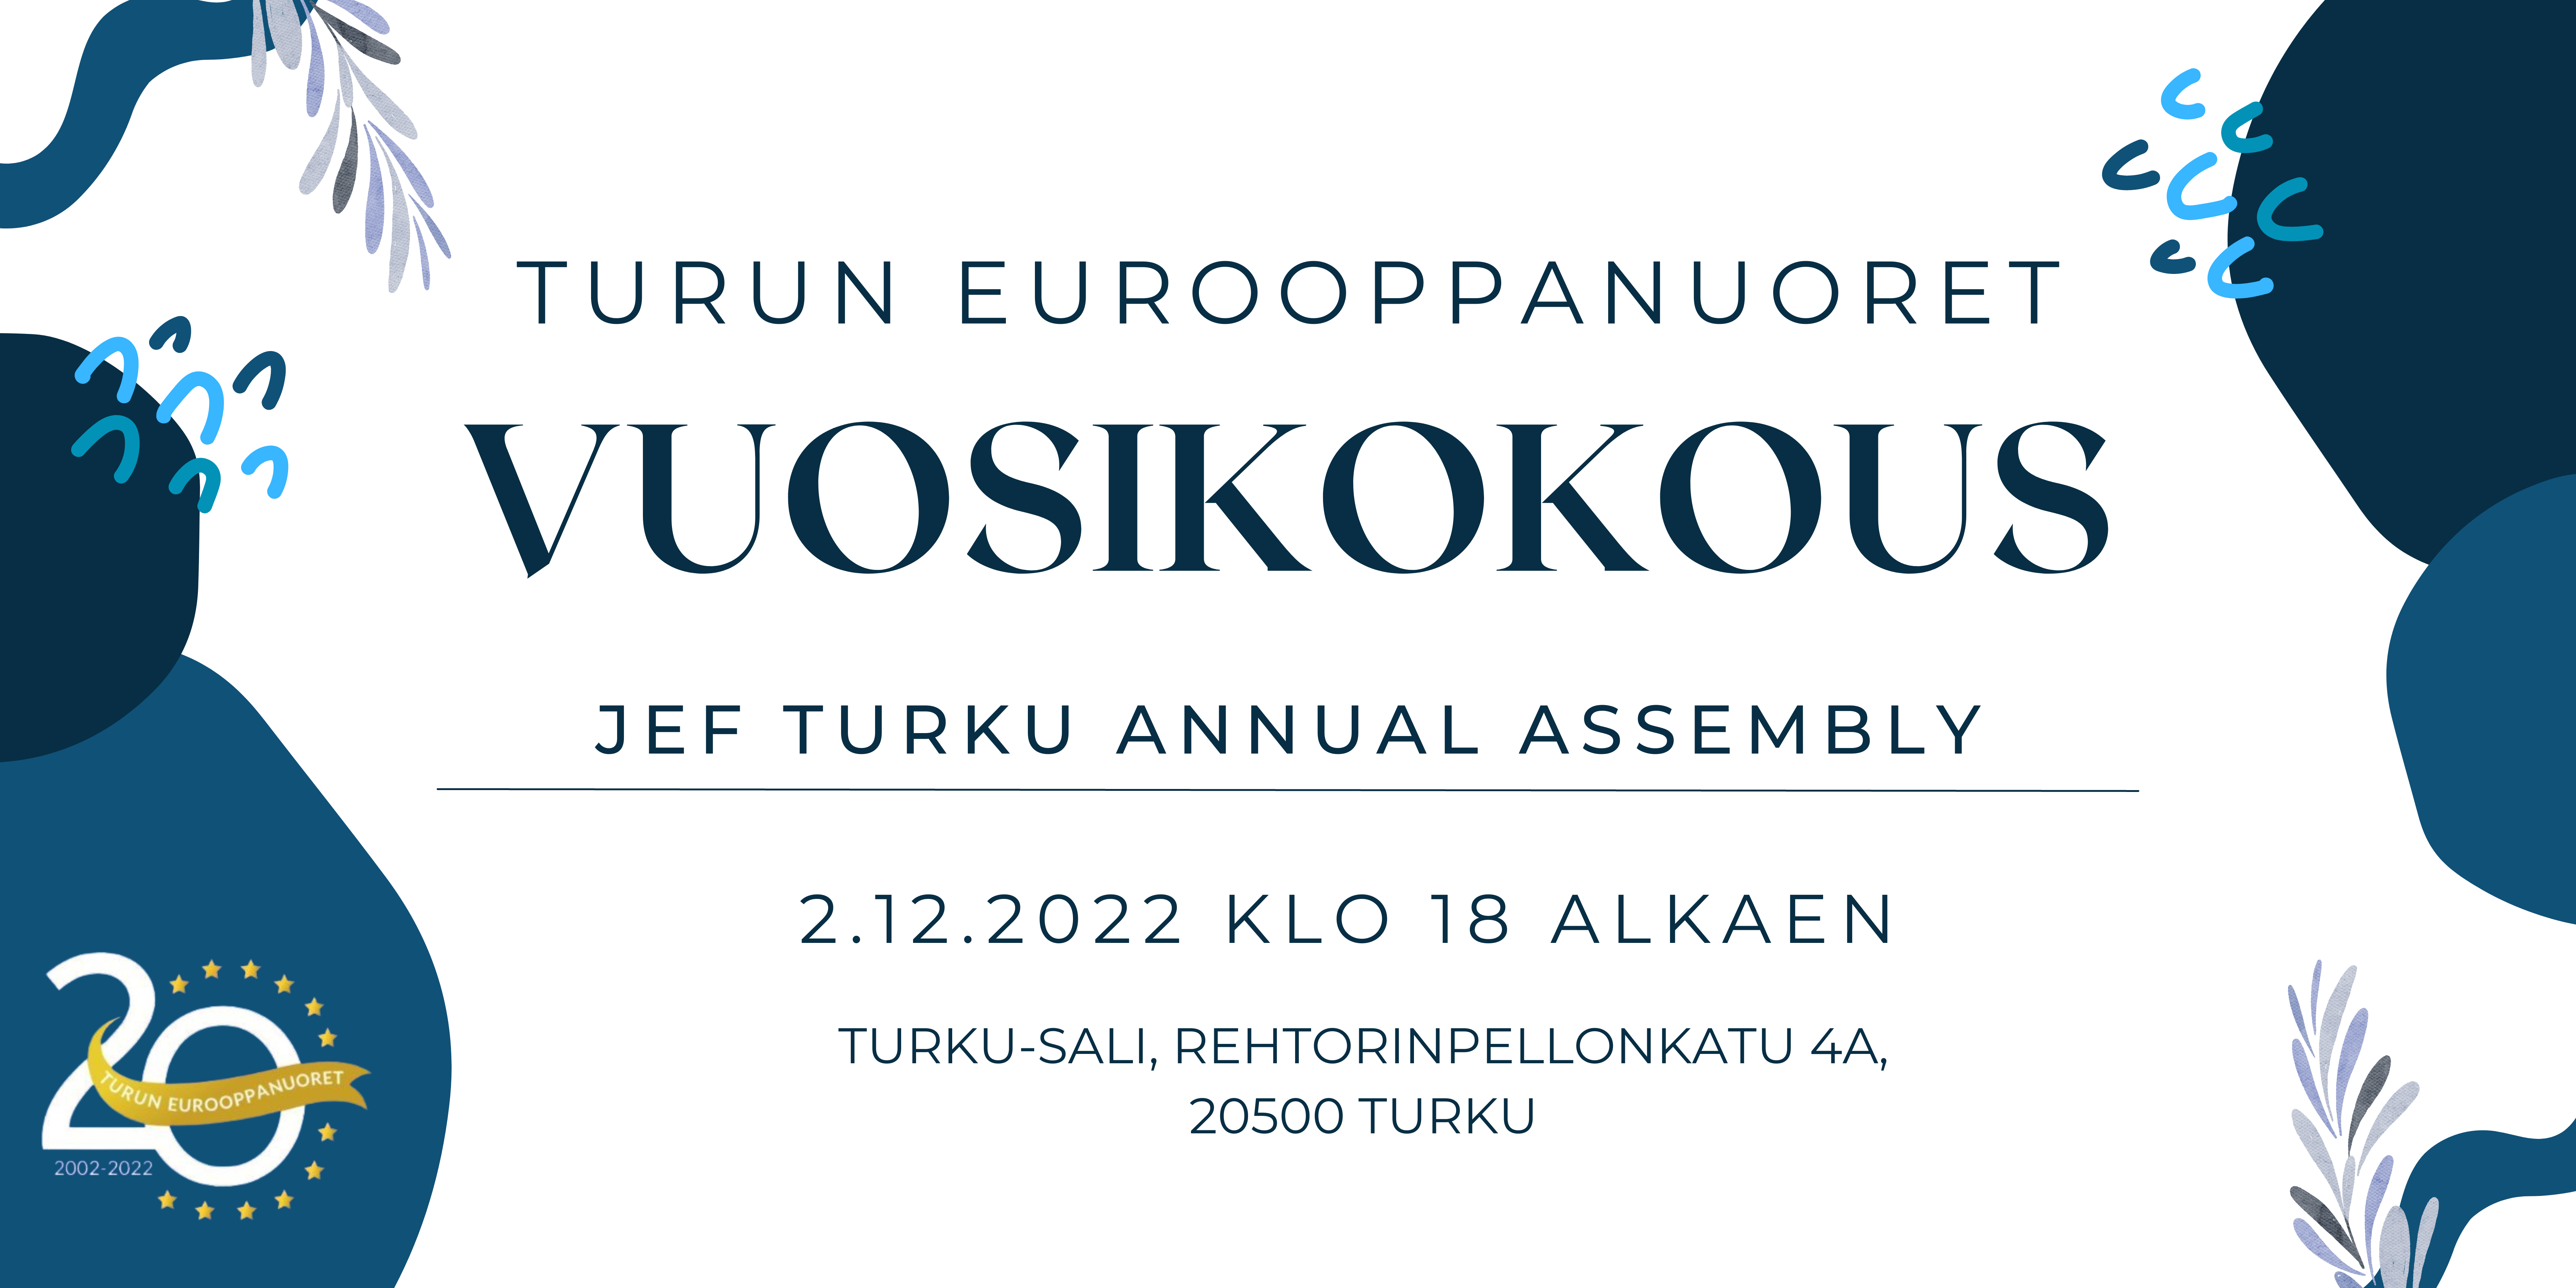 Valkoisella pohjalla sinisin yksityiskohdin kutsu Turun Eurooppanuorten vuosikokoukseen 2.12.2022 Turku-saliin klo 18 alkaen.